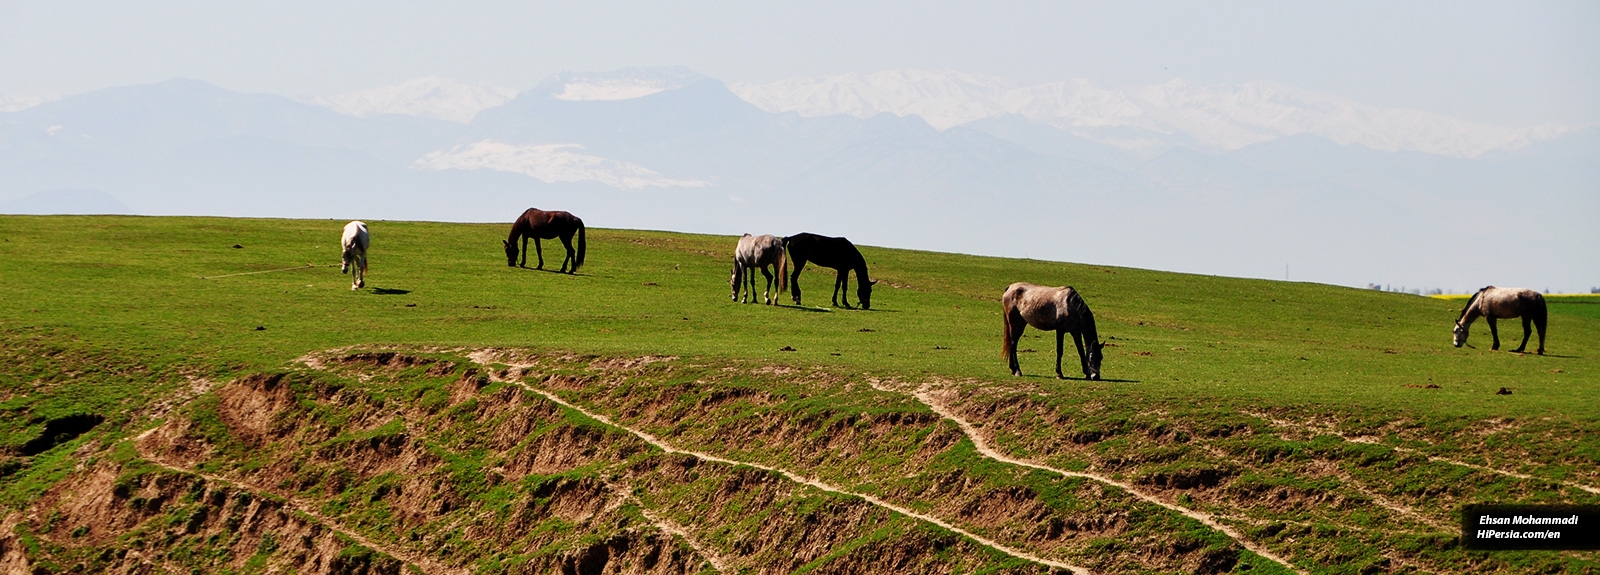 Turkoman horse